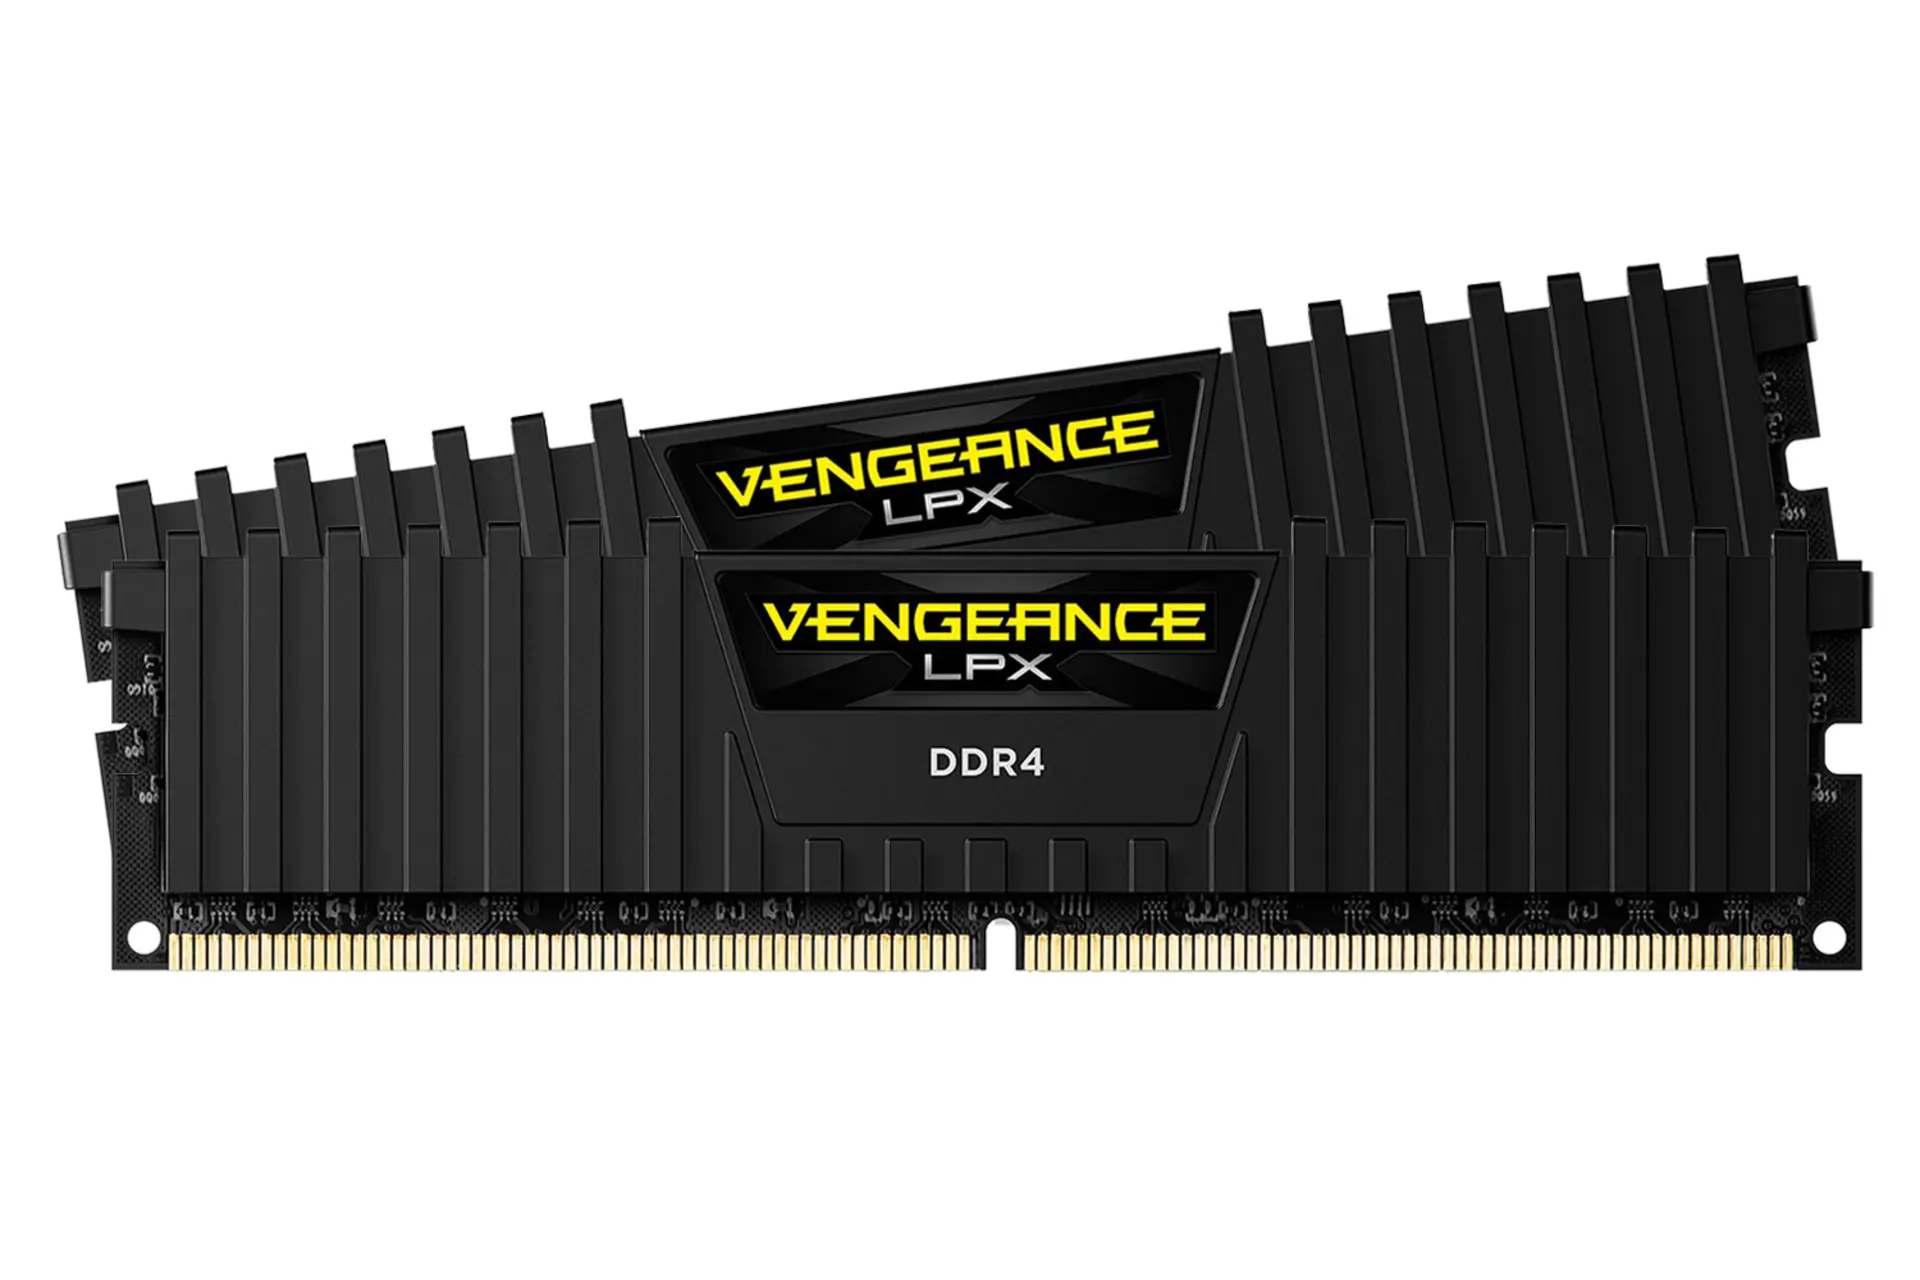 مرجع متخصصين ايران نماي جلو رم كورسير VENGEANCE LPX ظرفيت 16 گيگابايت (2x8) از نوع DDR4-3200